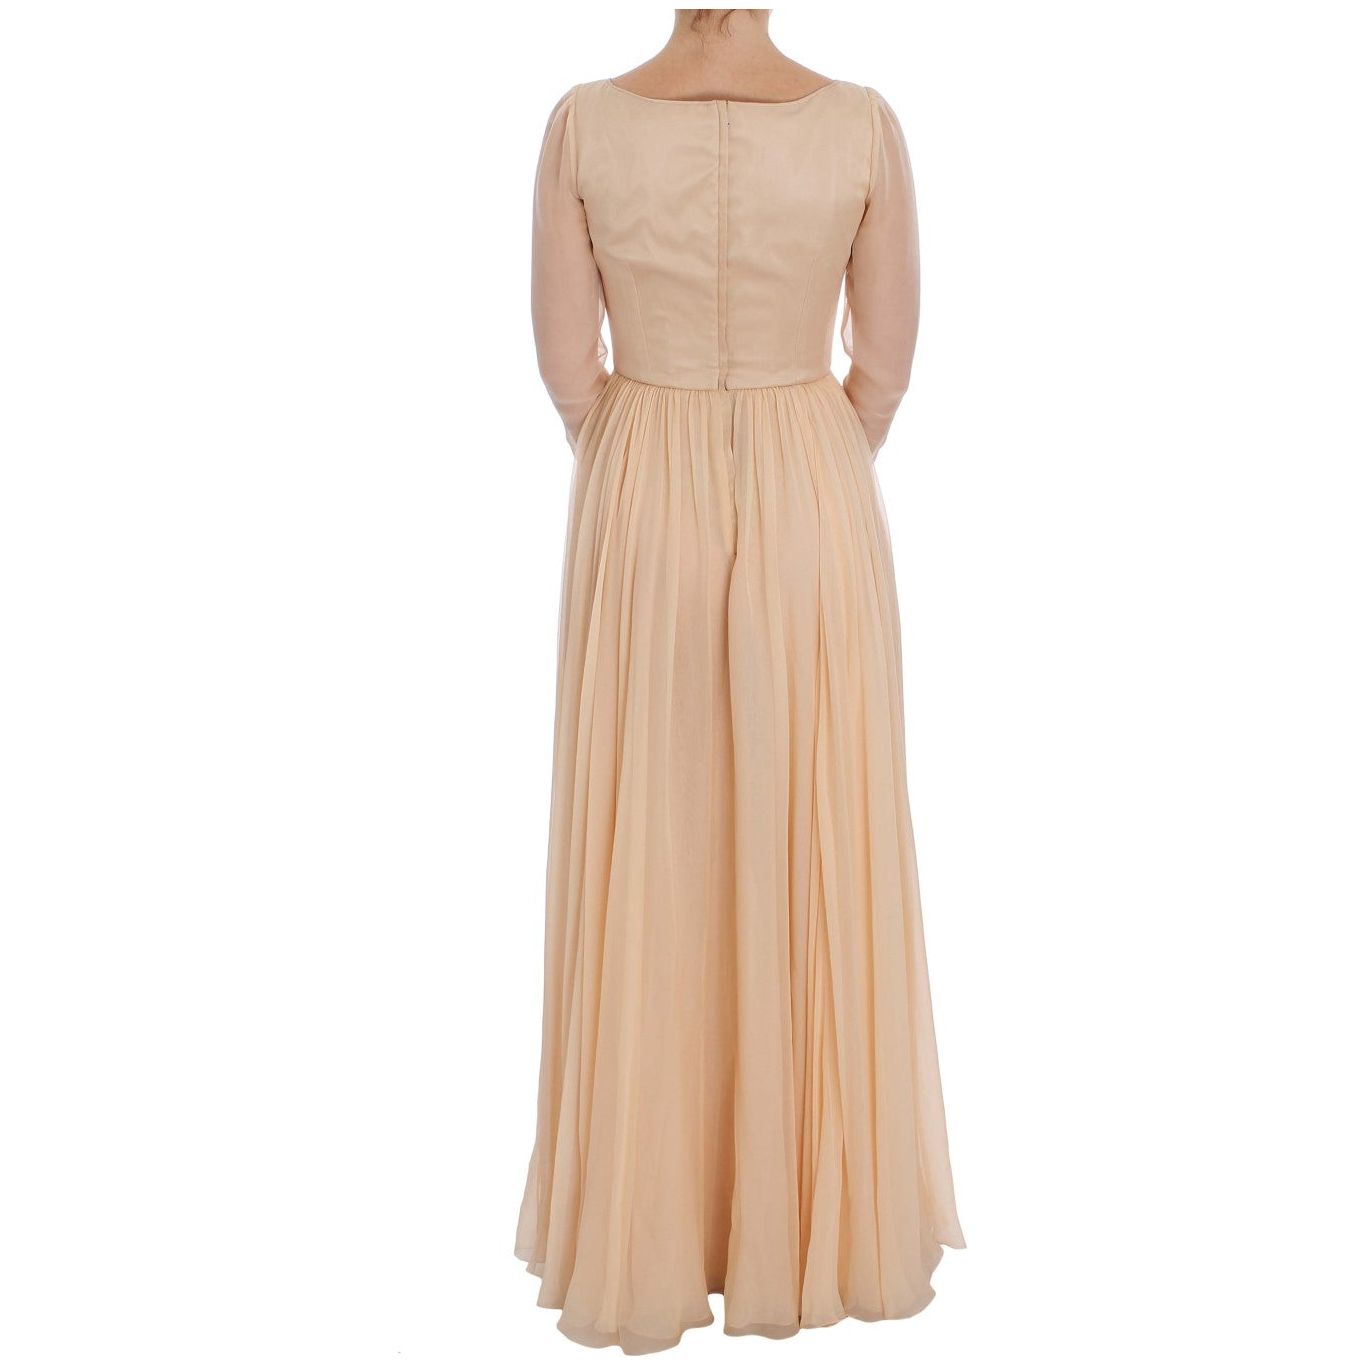 Dolce & Gabbana Elegant Beige Silk Full Length Sheath Dress Dresses beige-silk-ball-gown-full-length-dress